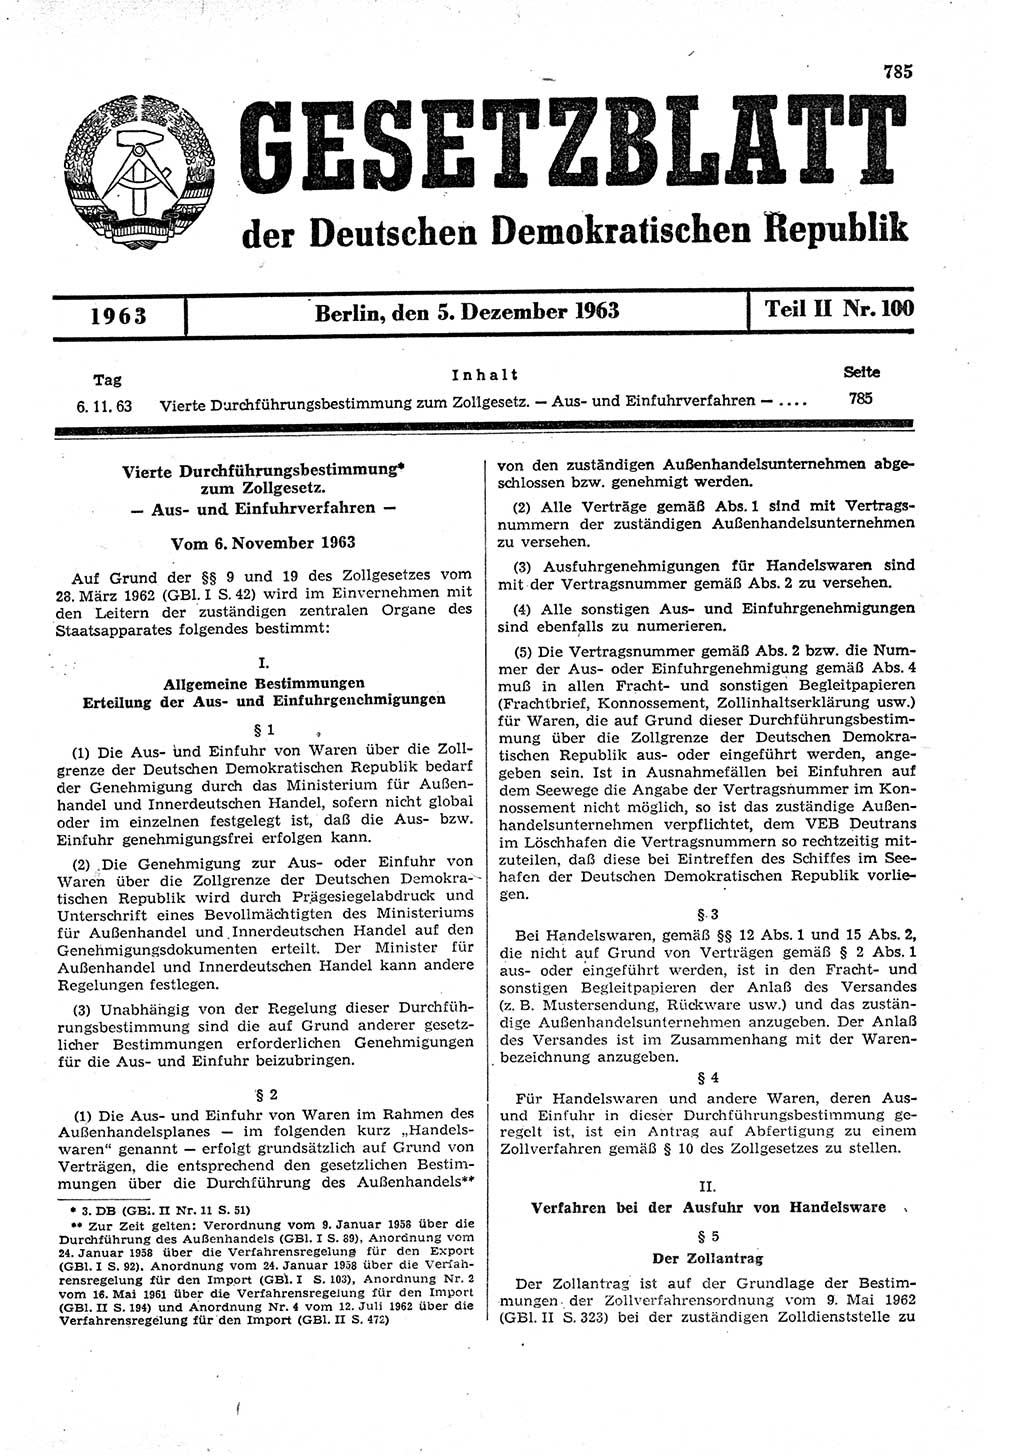 Gesetzblatt (GBl.) der Deutschen Demokratischen Republik (DDR) Teil ⅠⅠ 1963, Seite 785 (GBl. DDR ⅠⅠ 1963, S. 785)